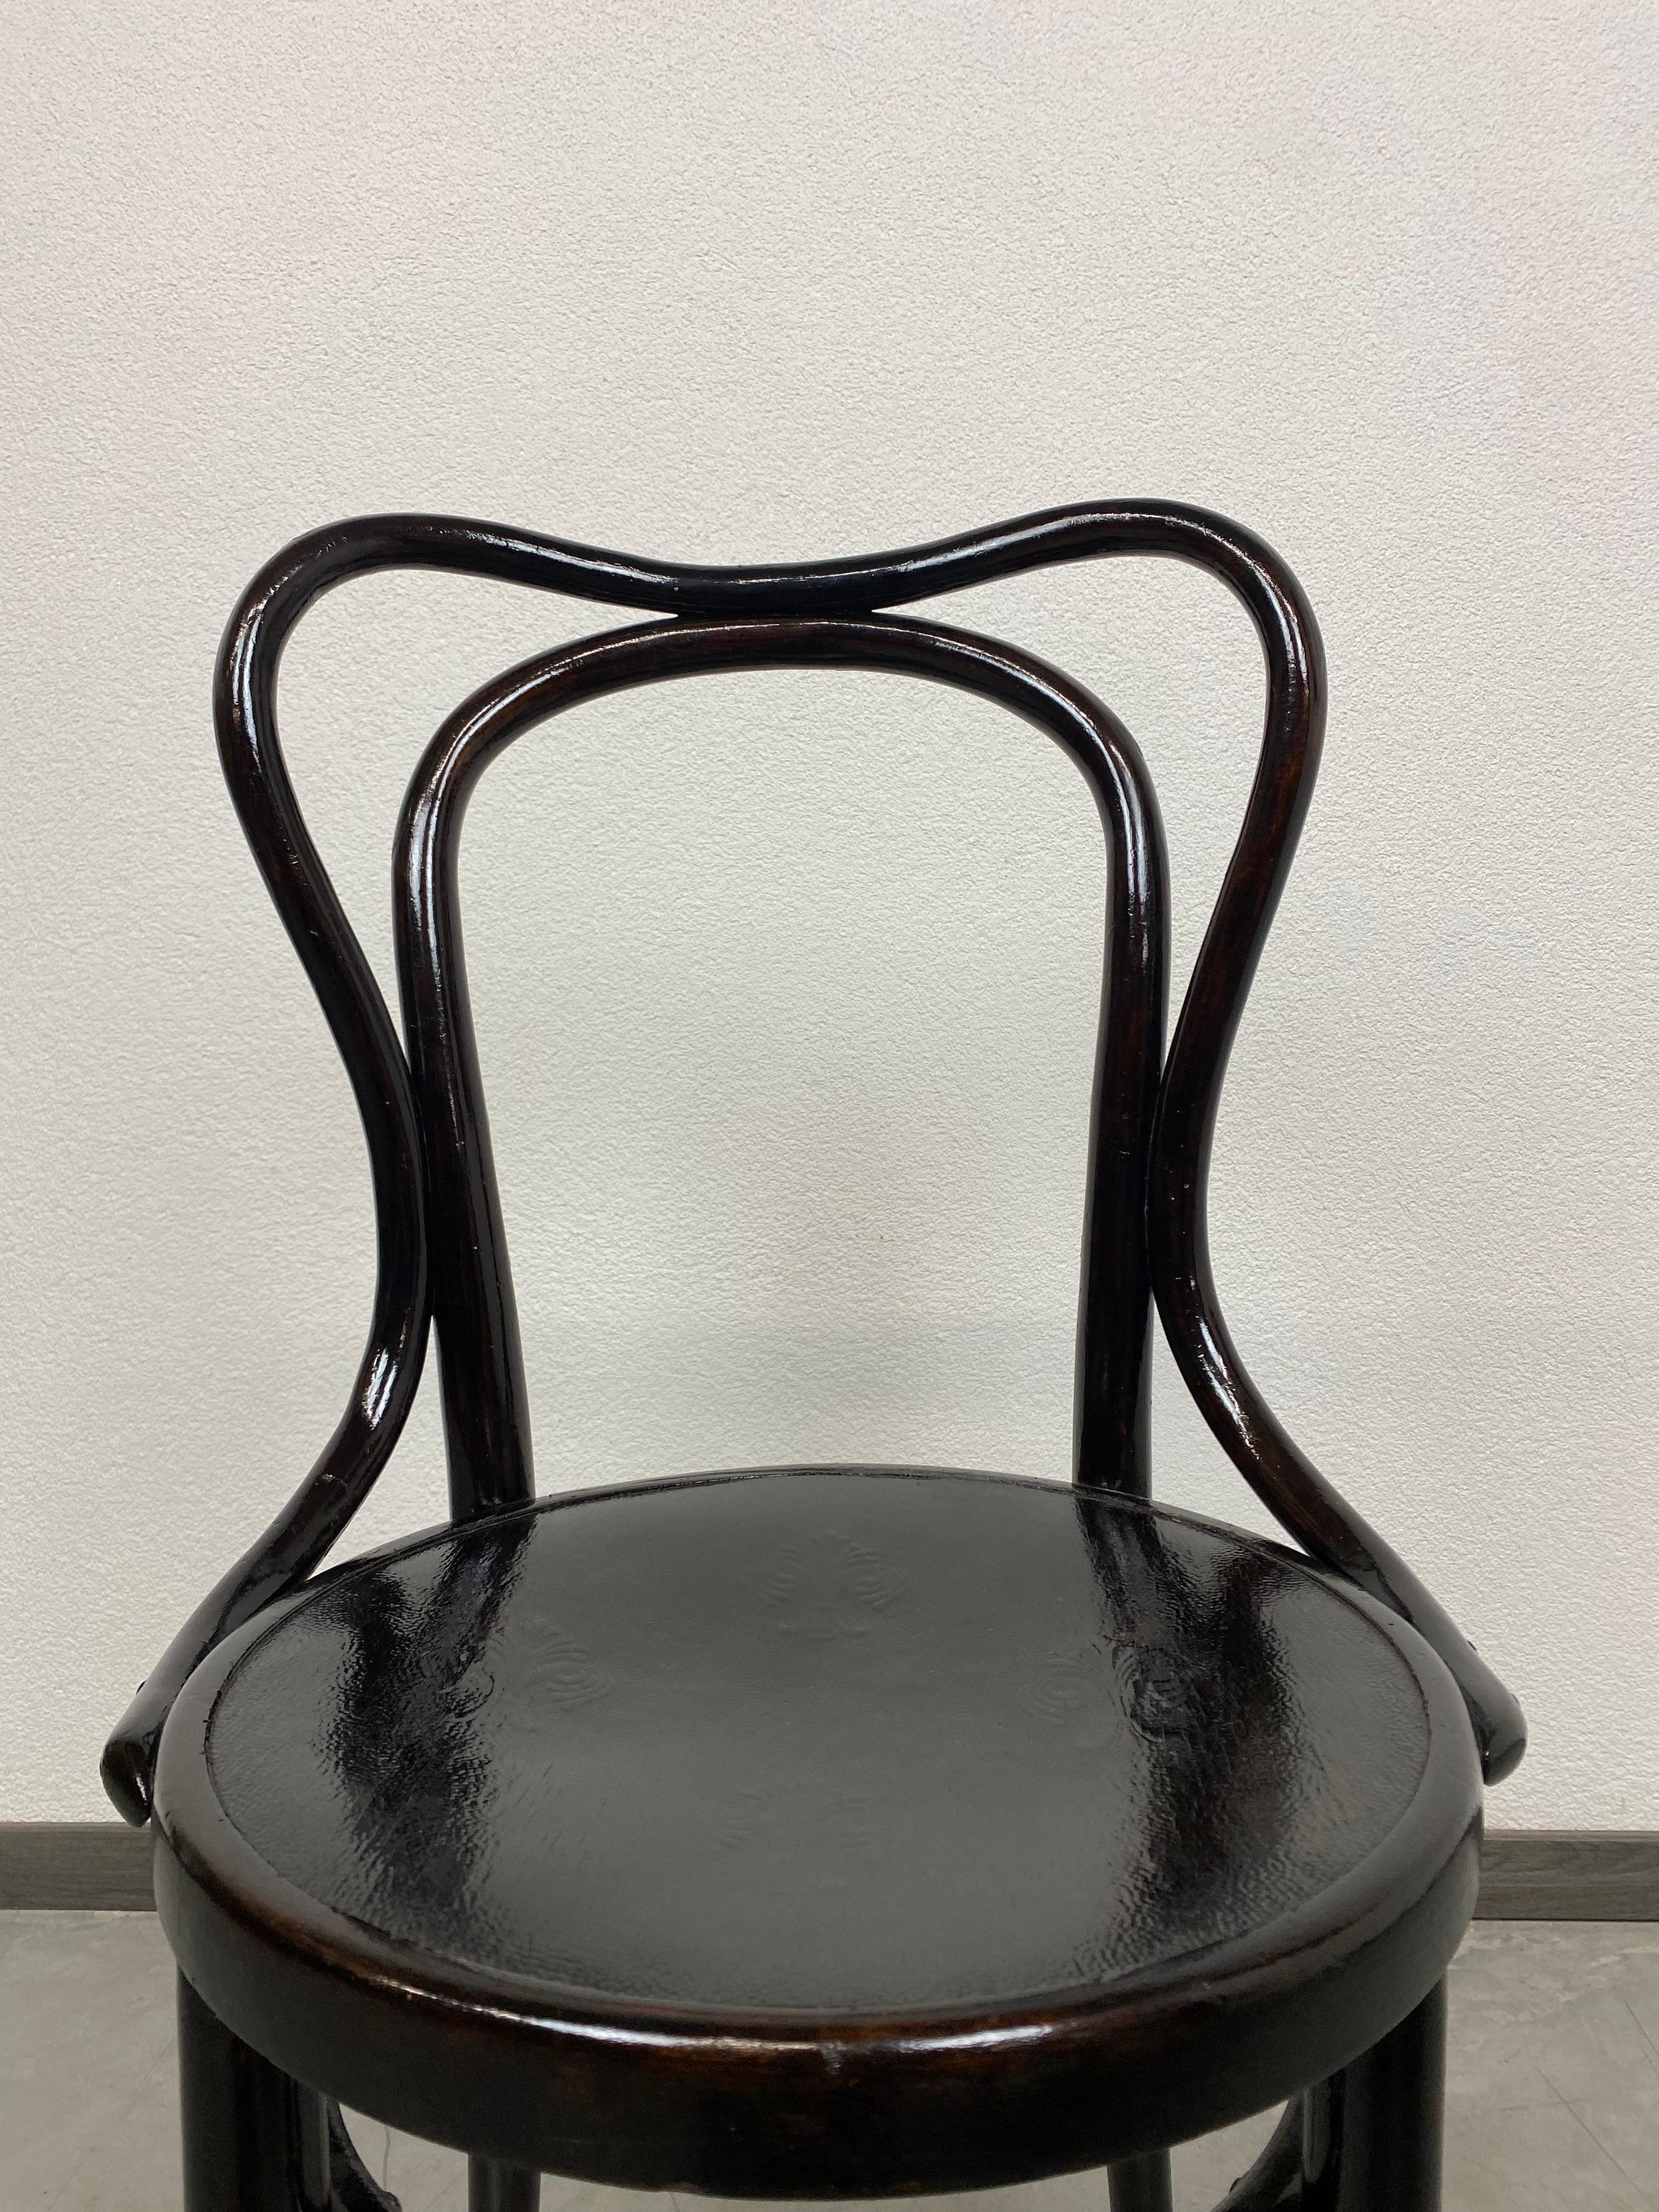 Vienna Secession Rare Blac Secession Thonet Chair For Sale